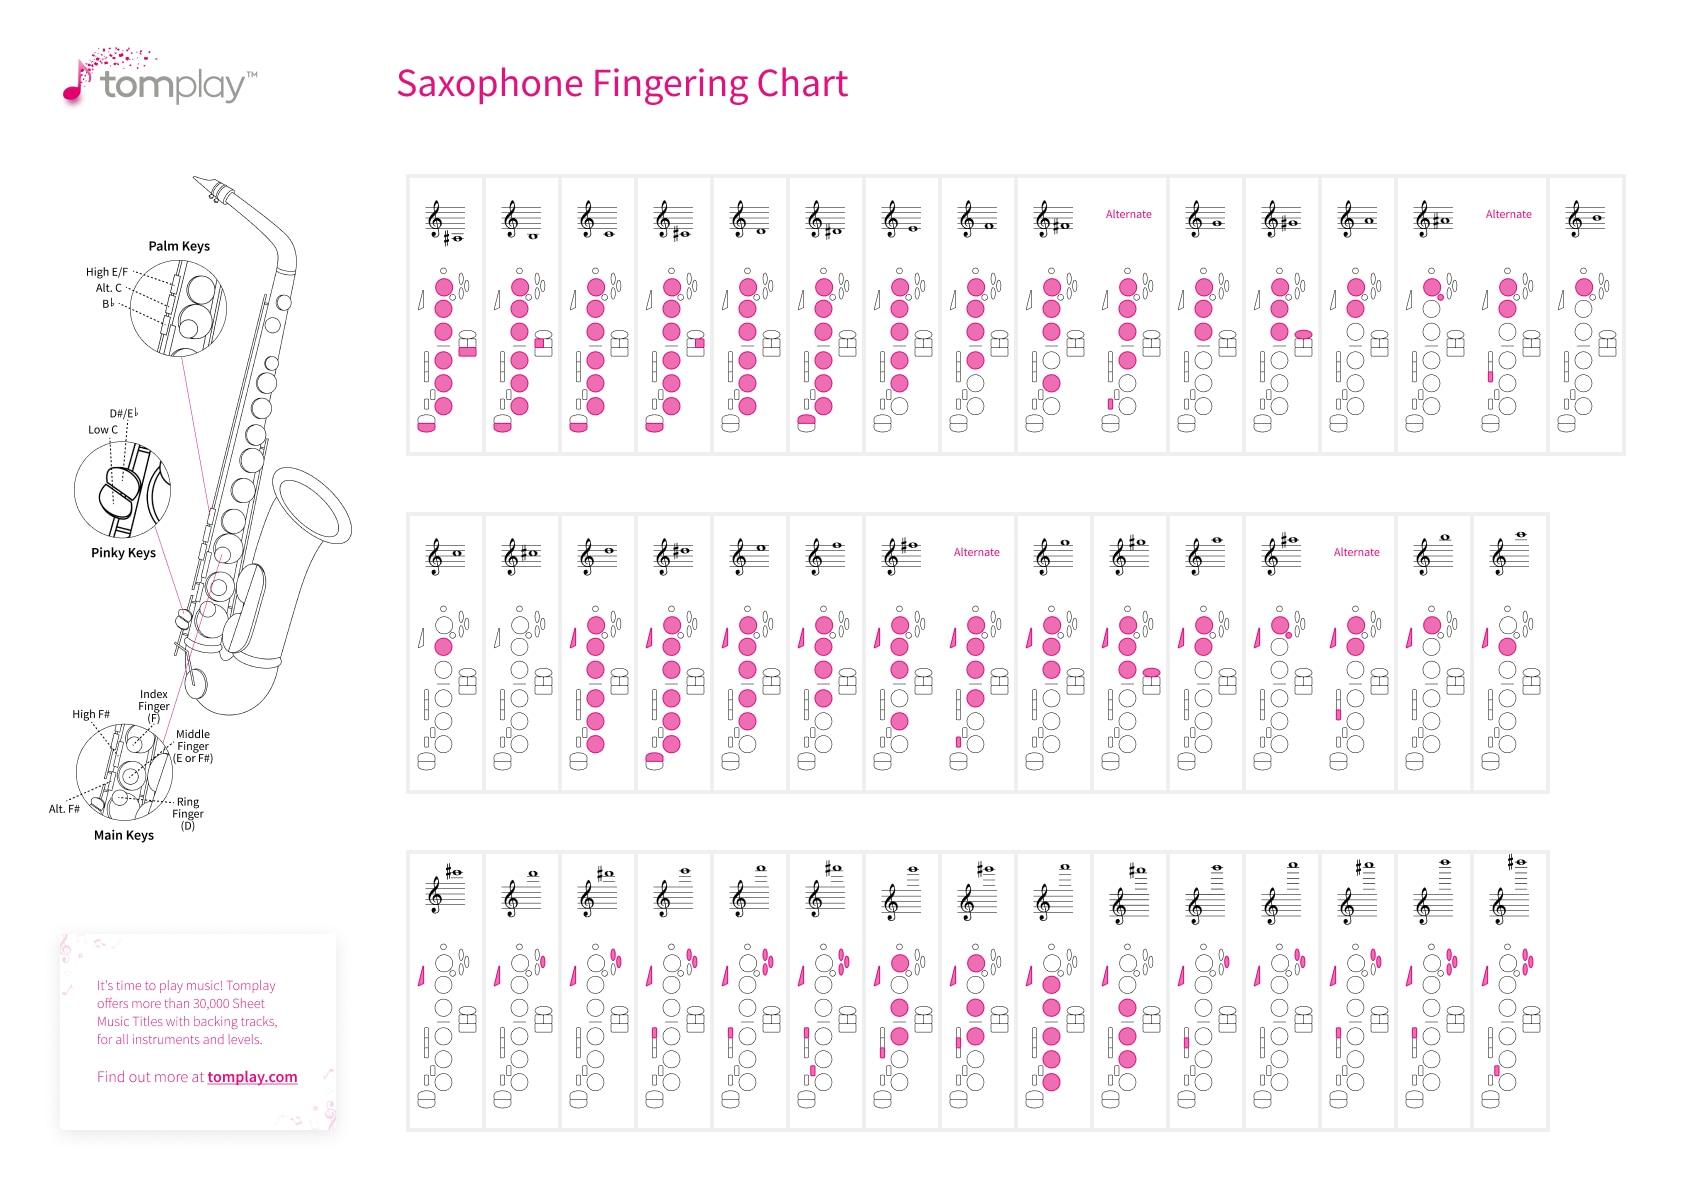 Saxophone ingering chart tool 